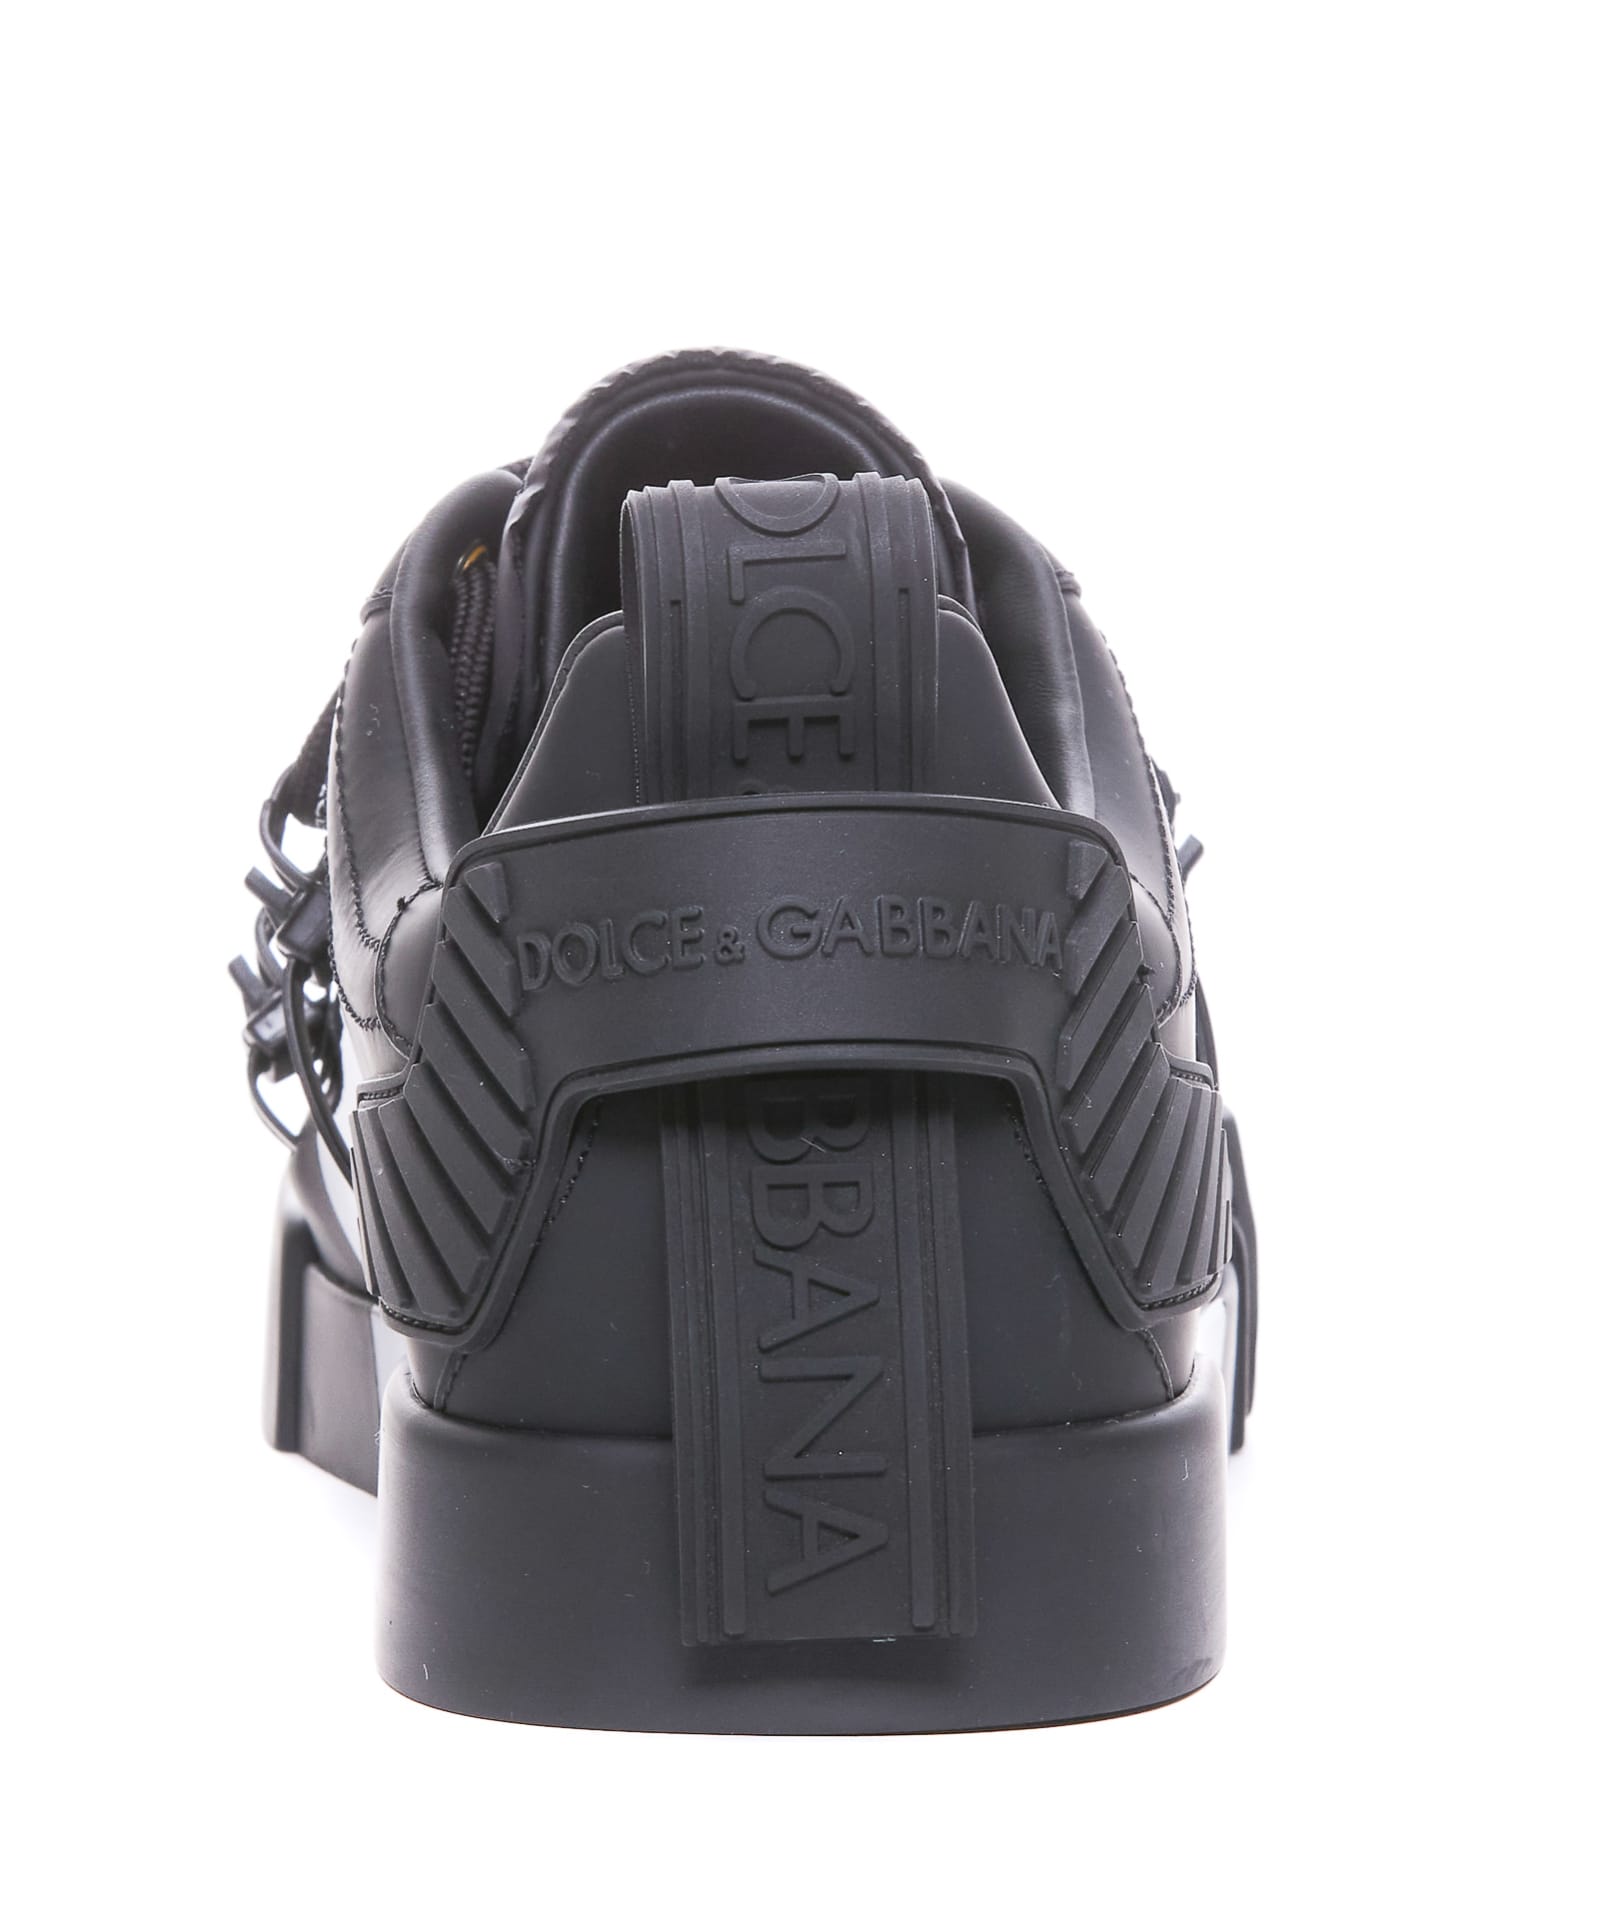 Shop Dolce & Gabbana Portofino Sneakers In Nero/bianco